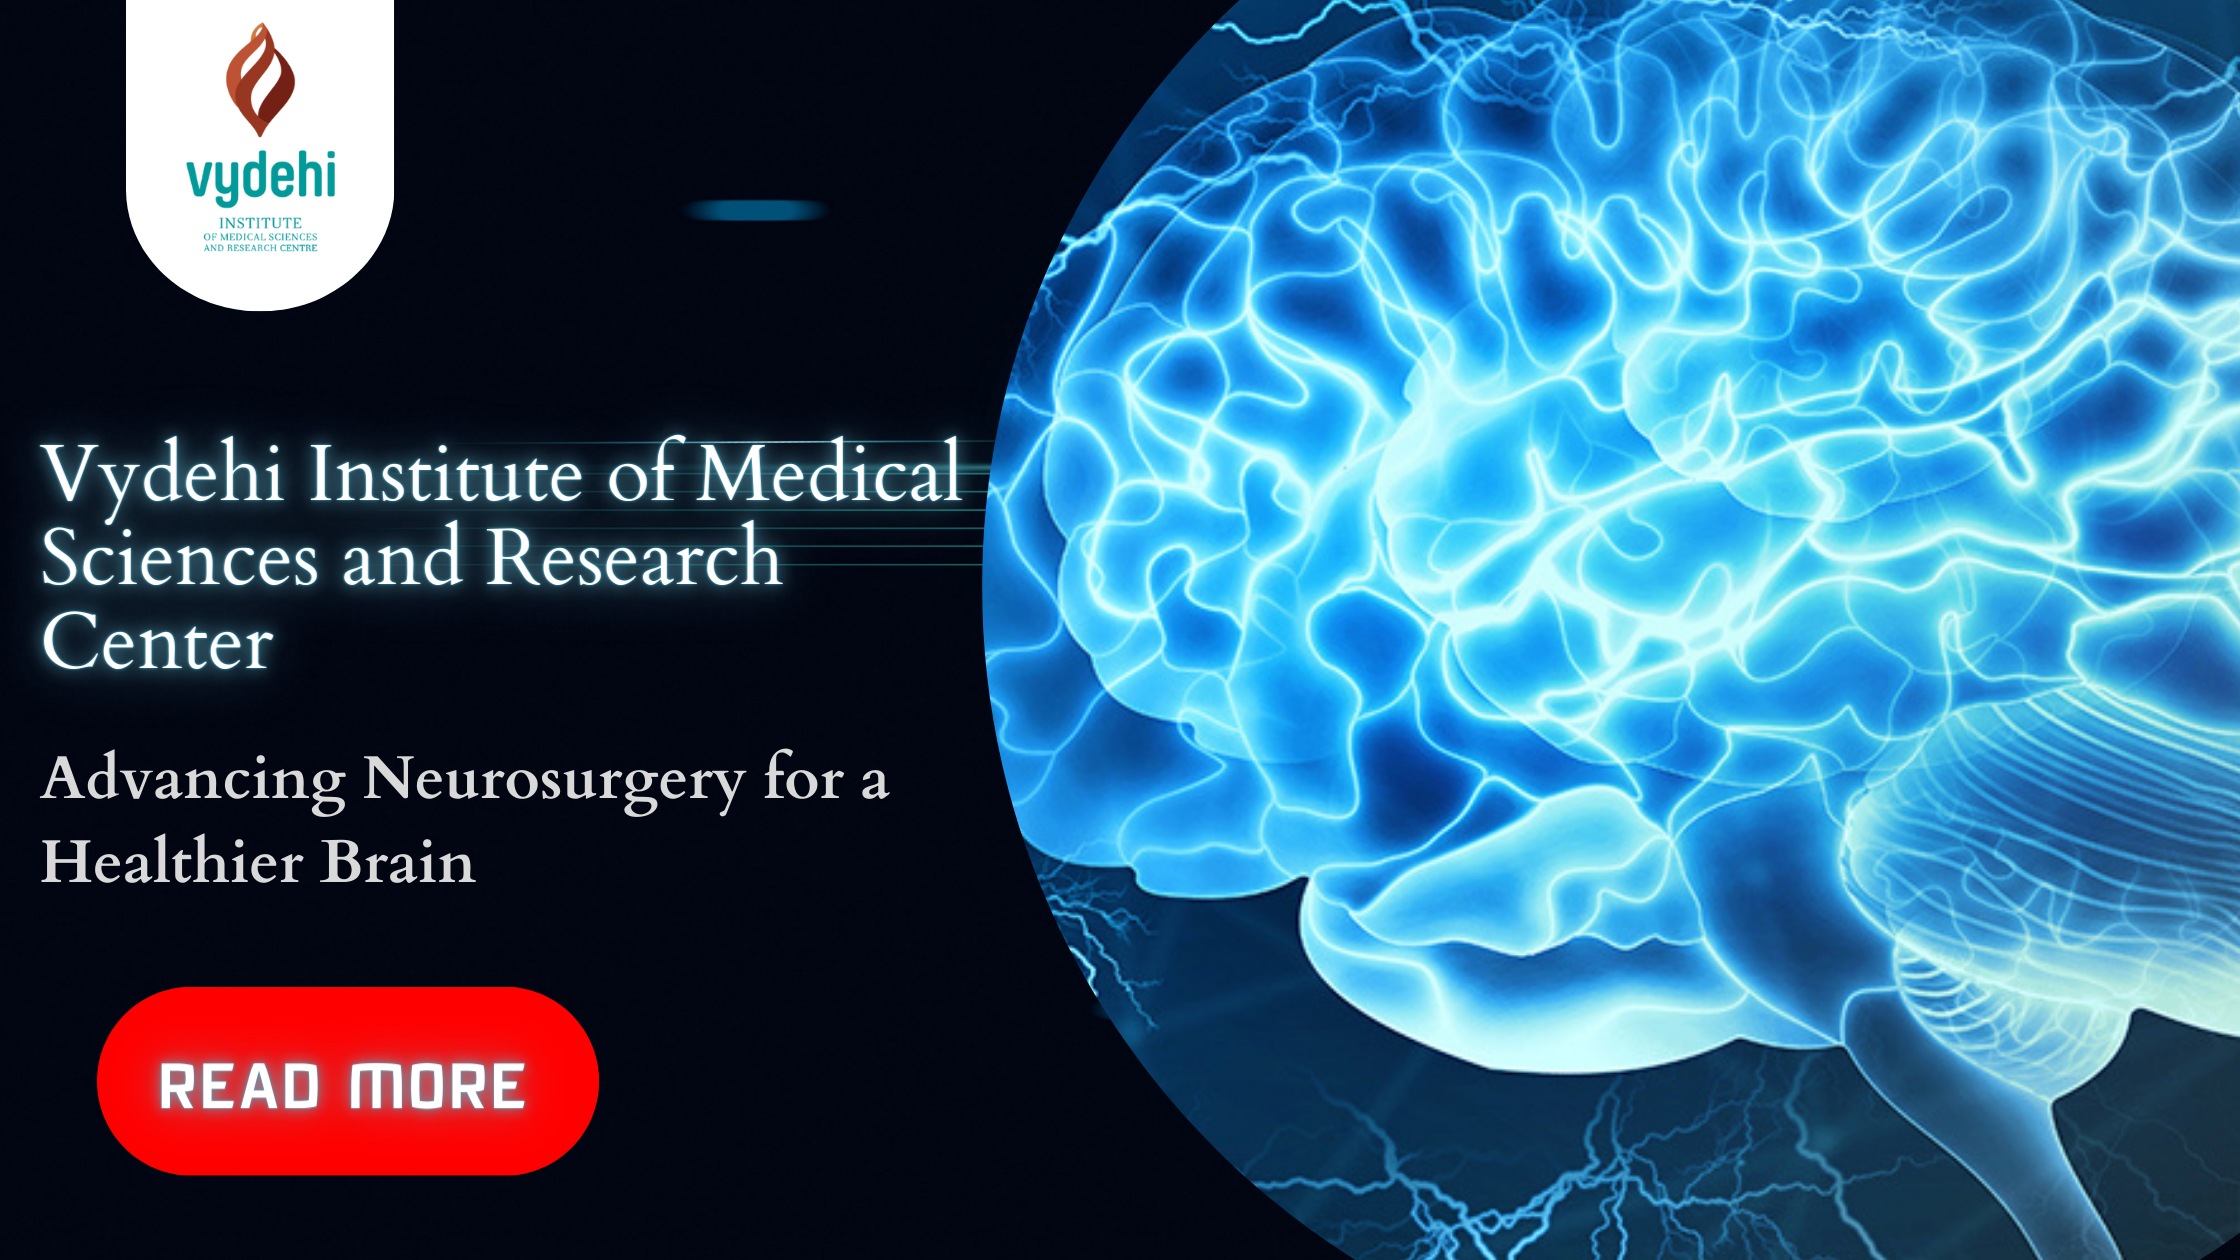 Advancing Neurosurgery for a Healthier Brain